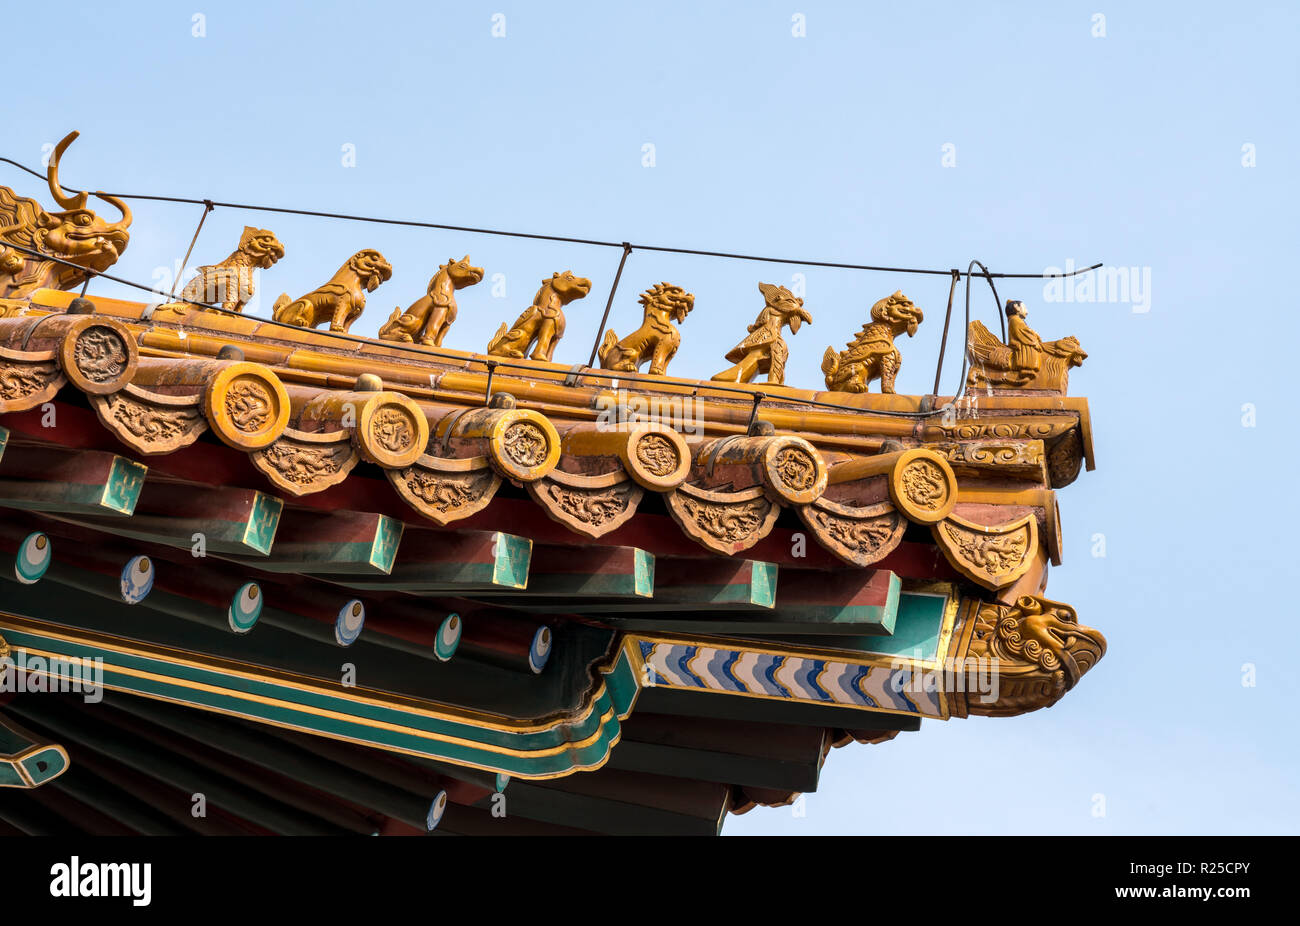 Detalles del techo y tallados en la Ciudad Prohibida en Beijing Foto de stock